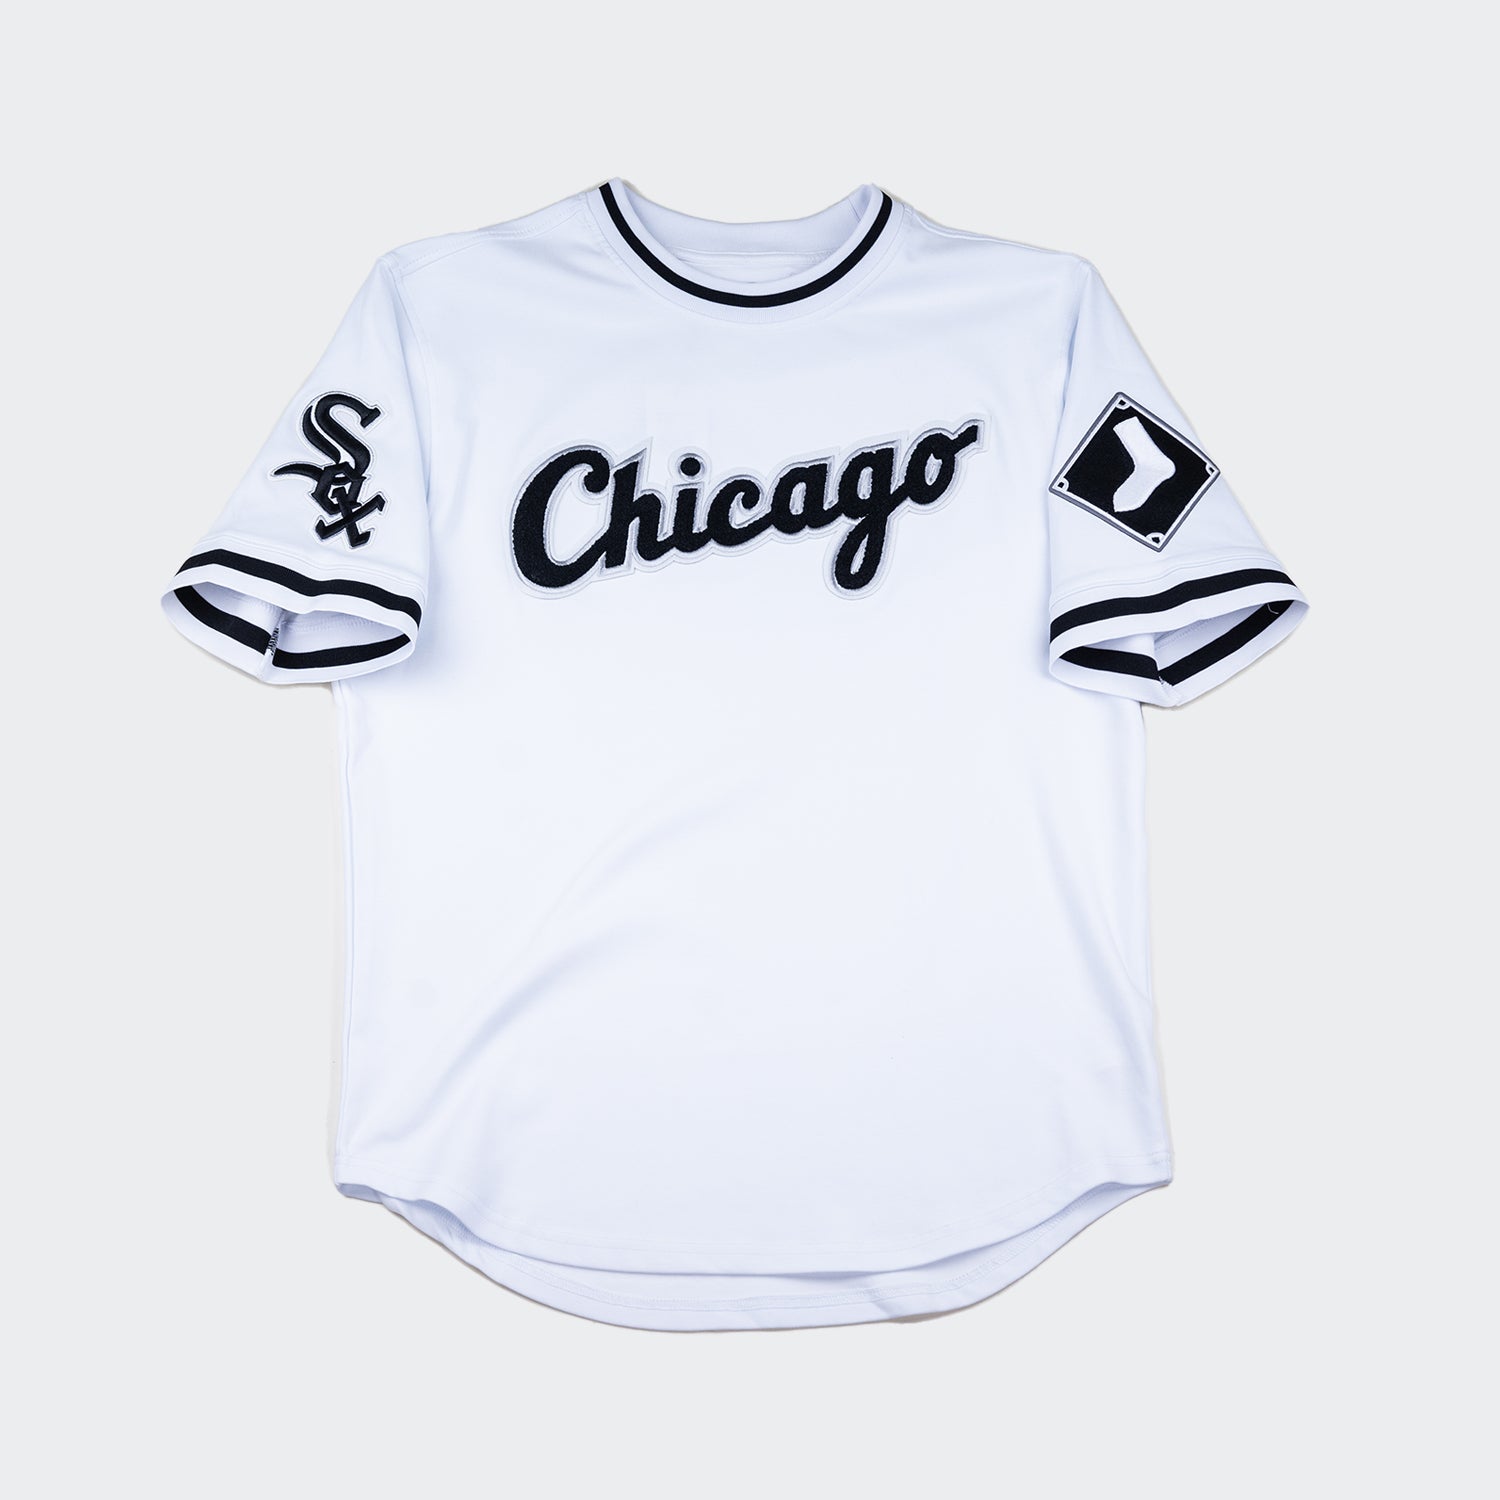 chicago white sox tshirts